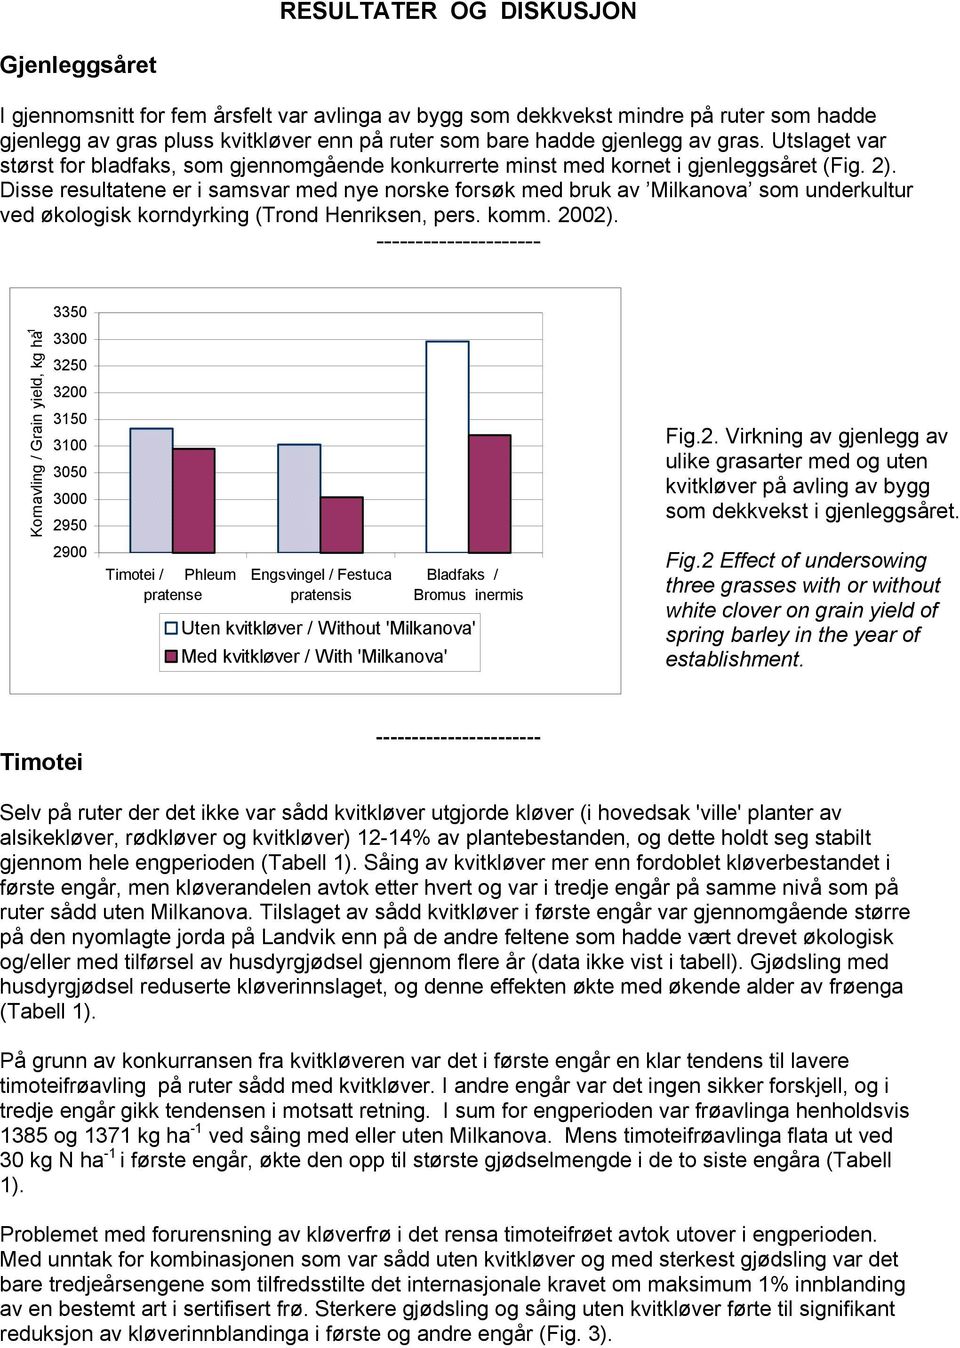 Disse resultatene er i samsvar med nye norske forsøk med bruk av Milkanova som underkultur ved økologisk korndyrking (Trond Henriksen, pers. komm. 2002).